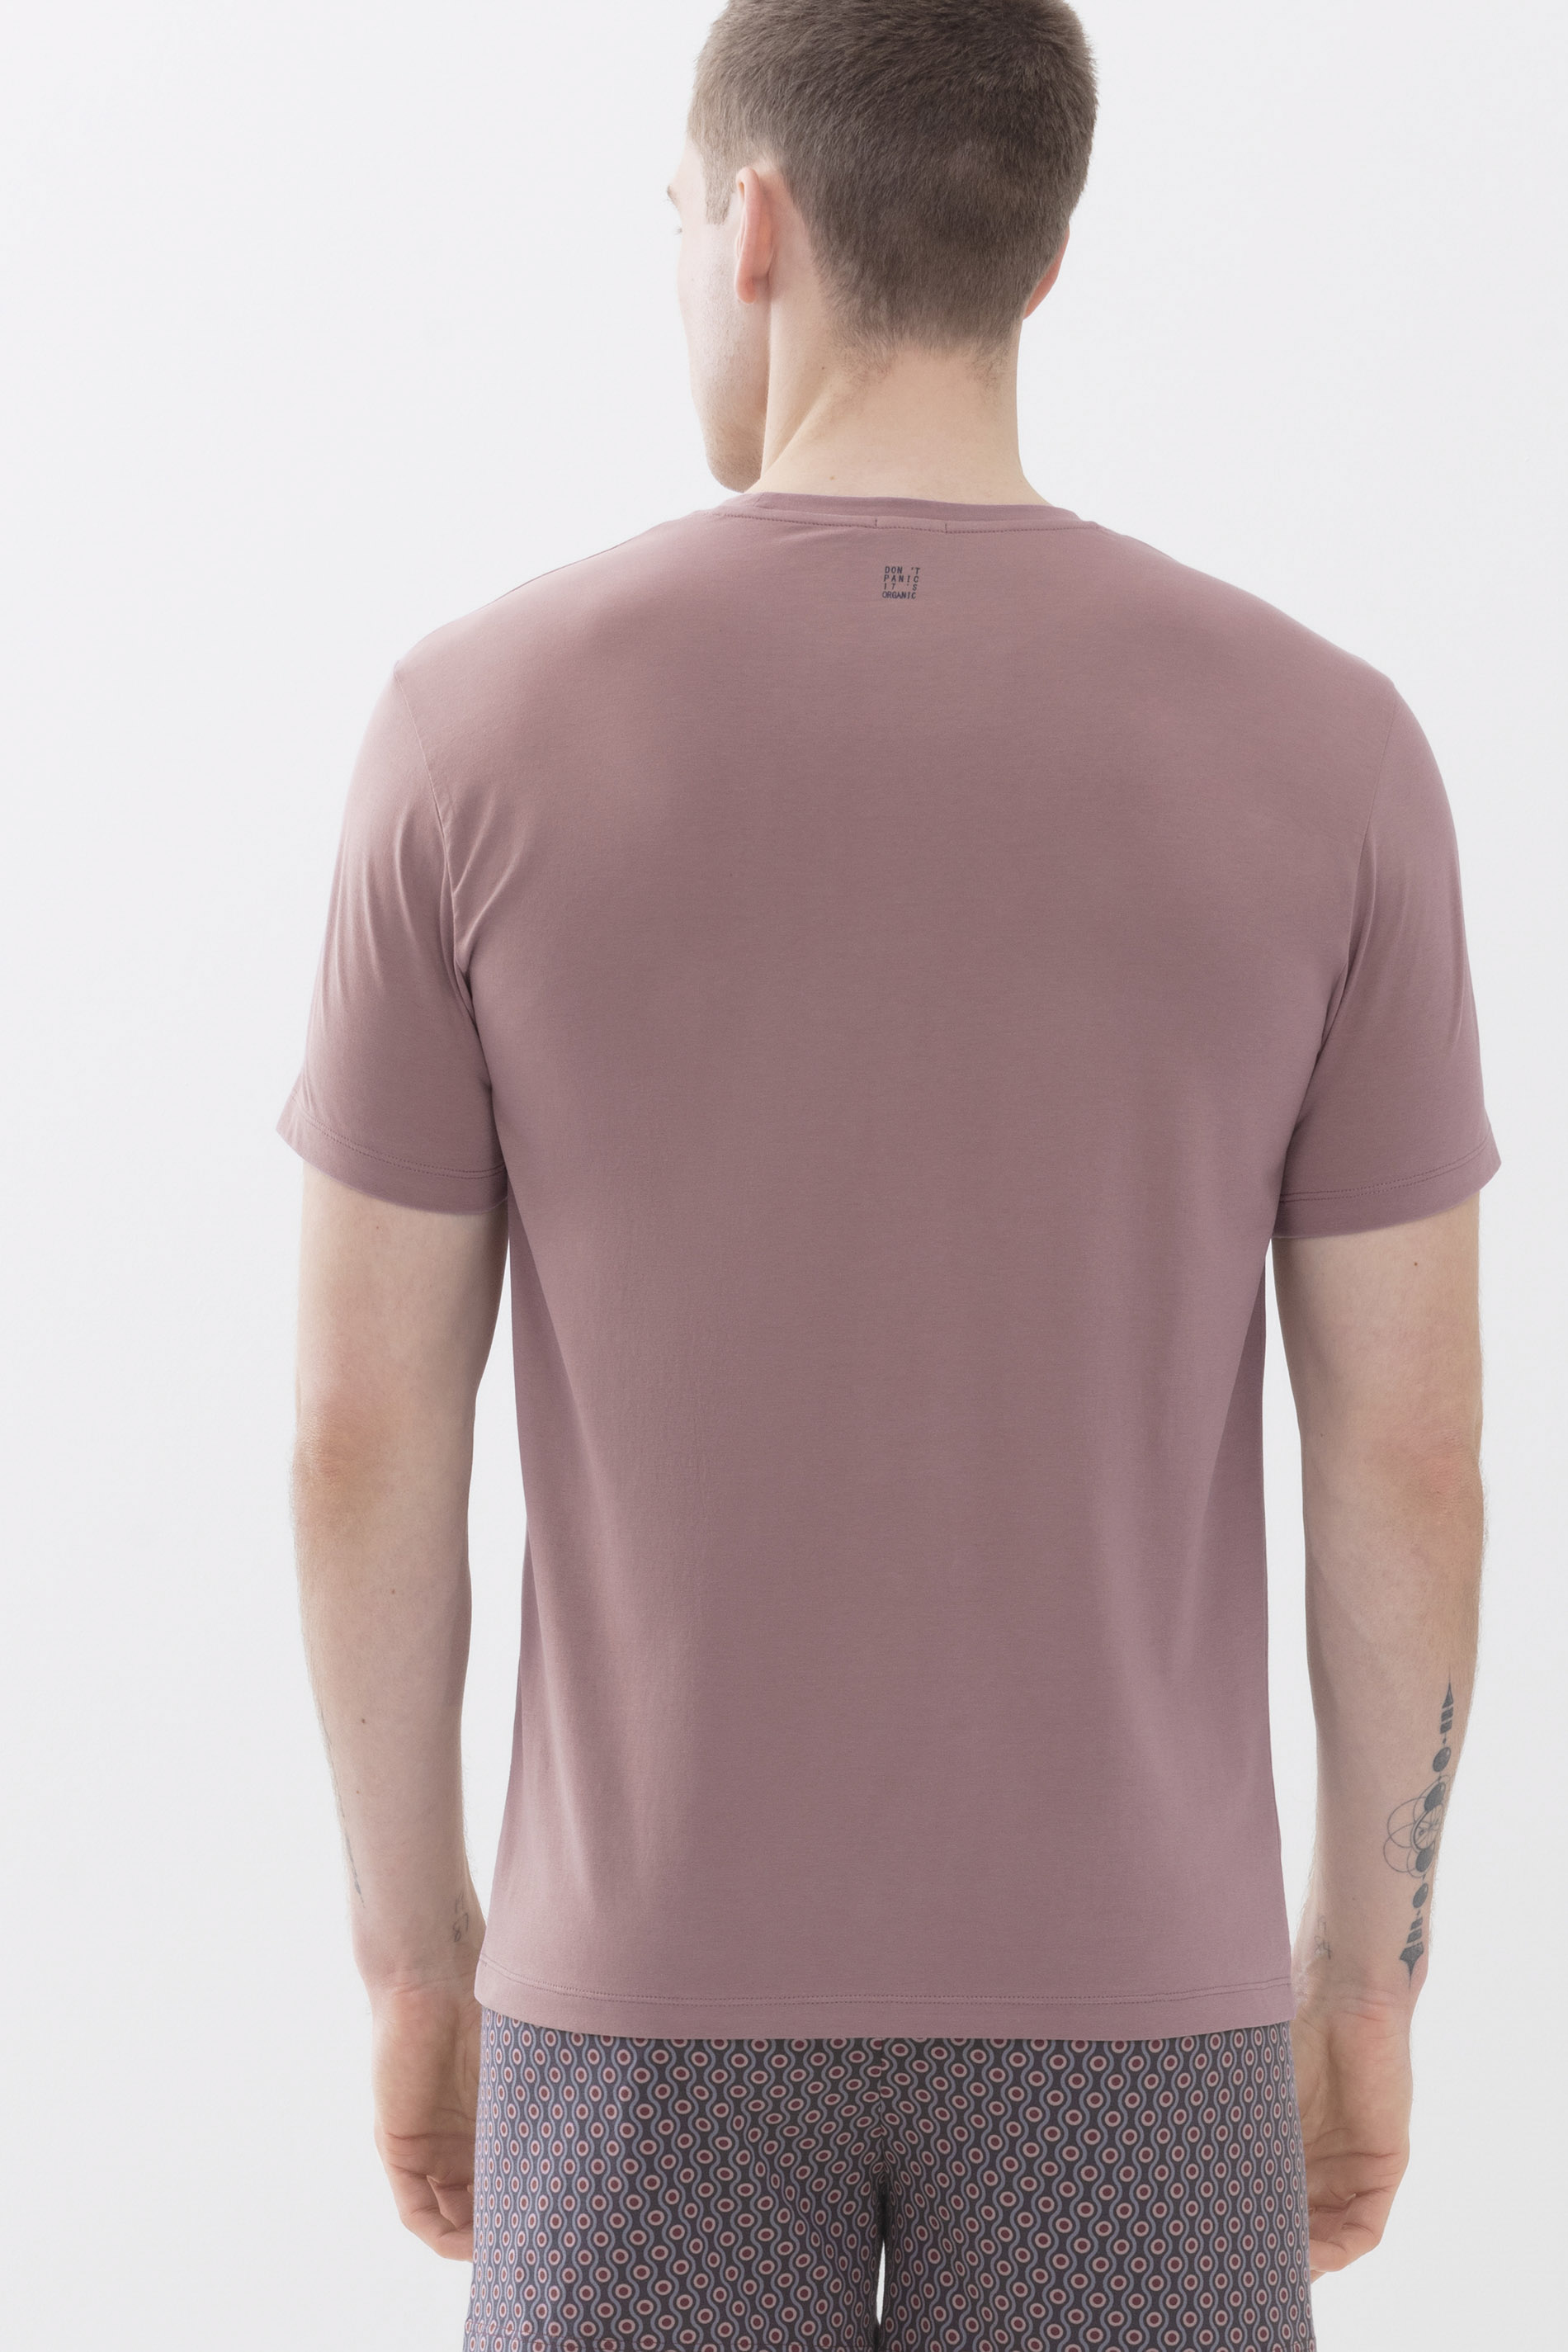 T-Shirt Blush Powder Serie Relax Rückansicht | mey®